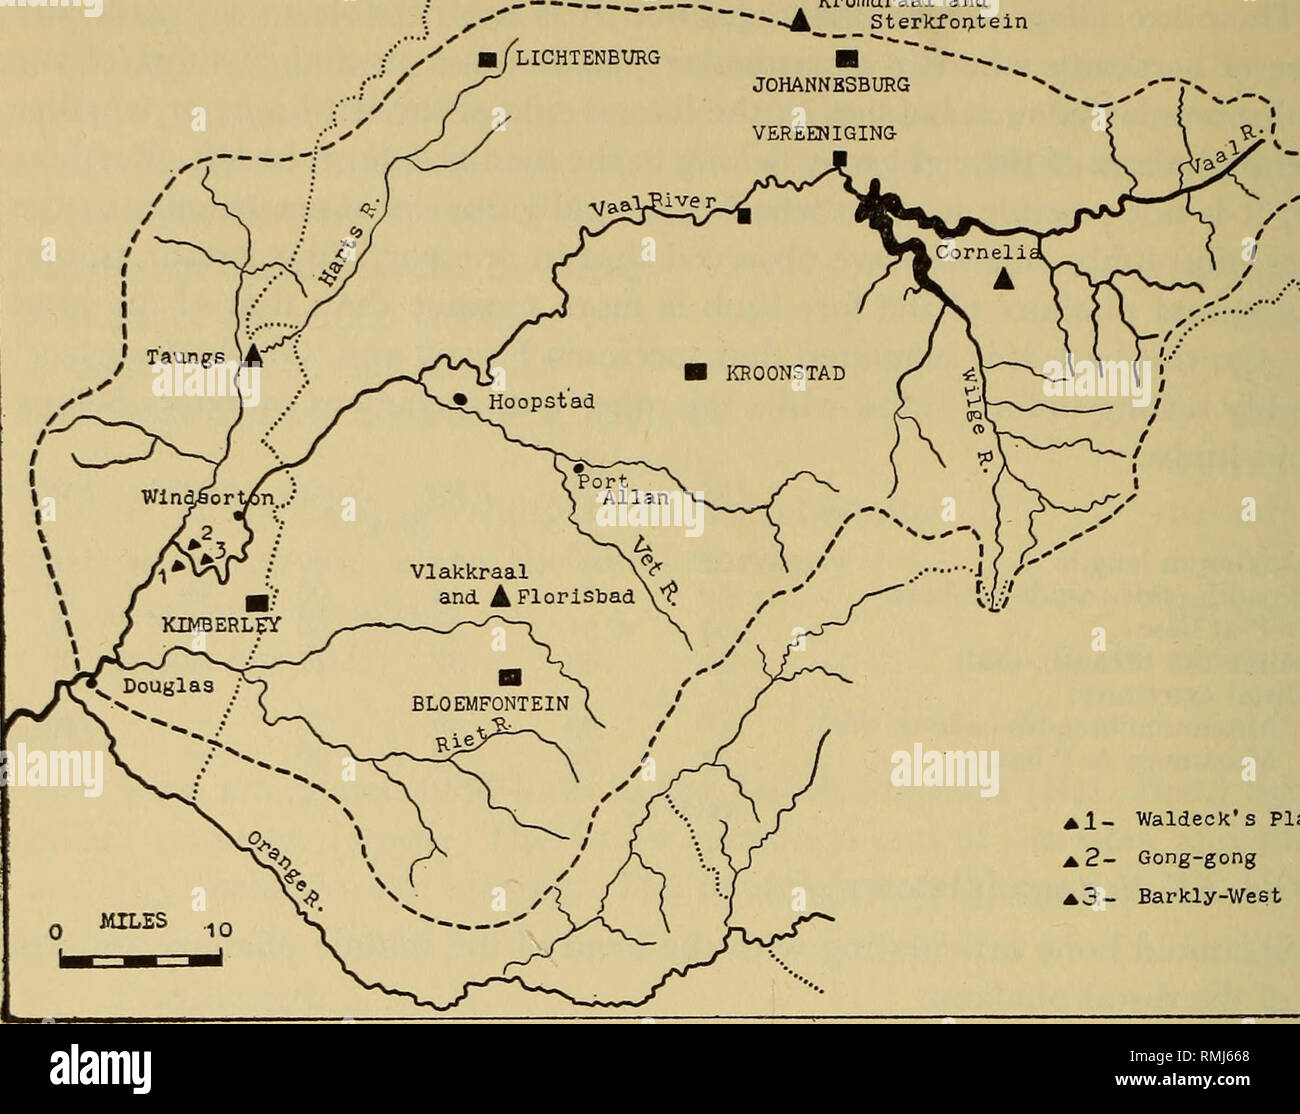 vaal river map